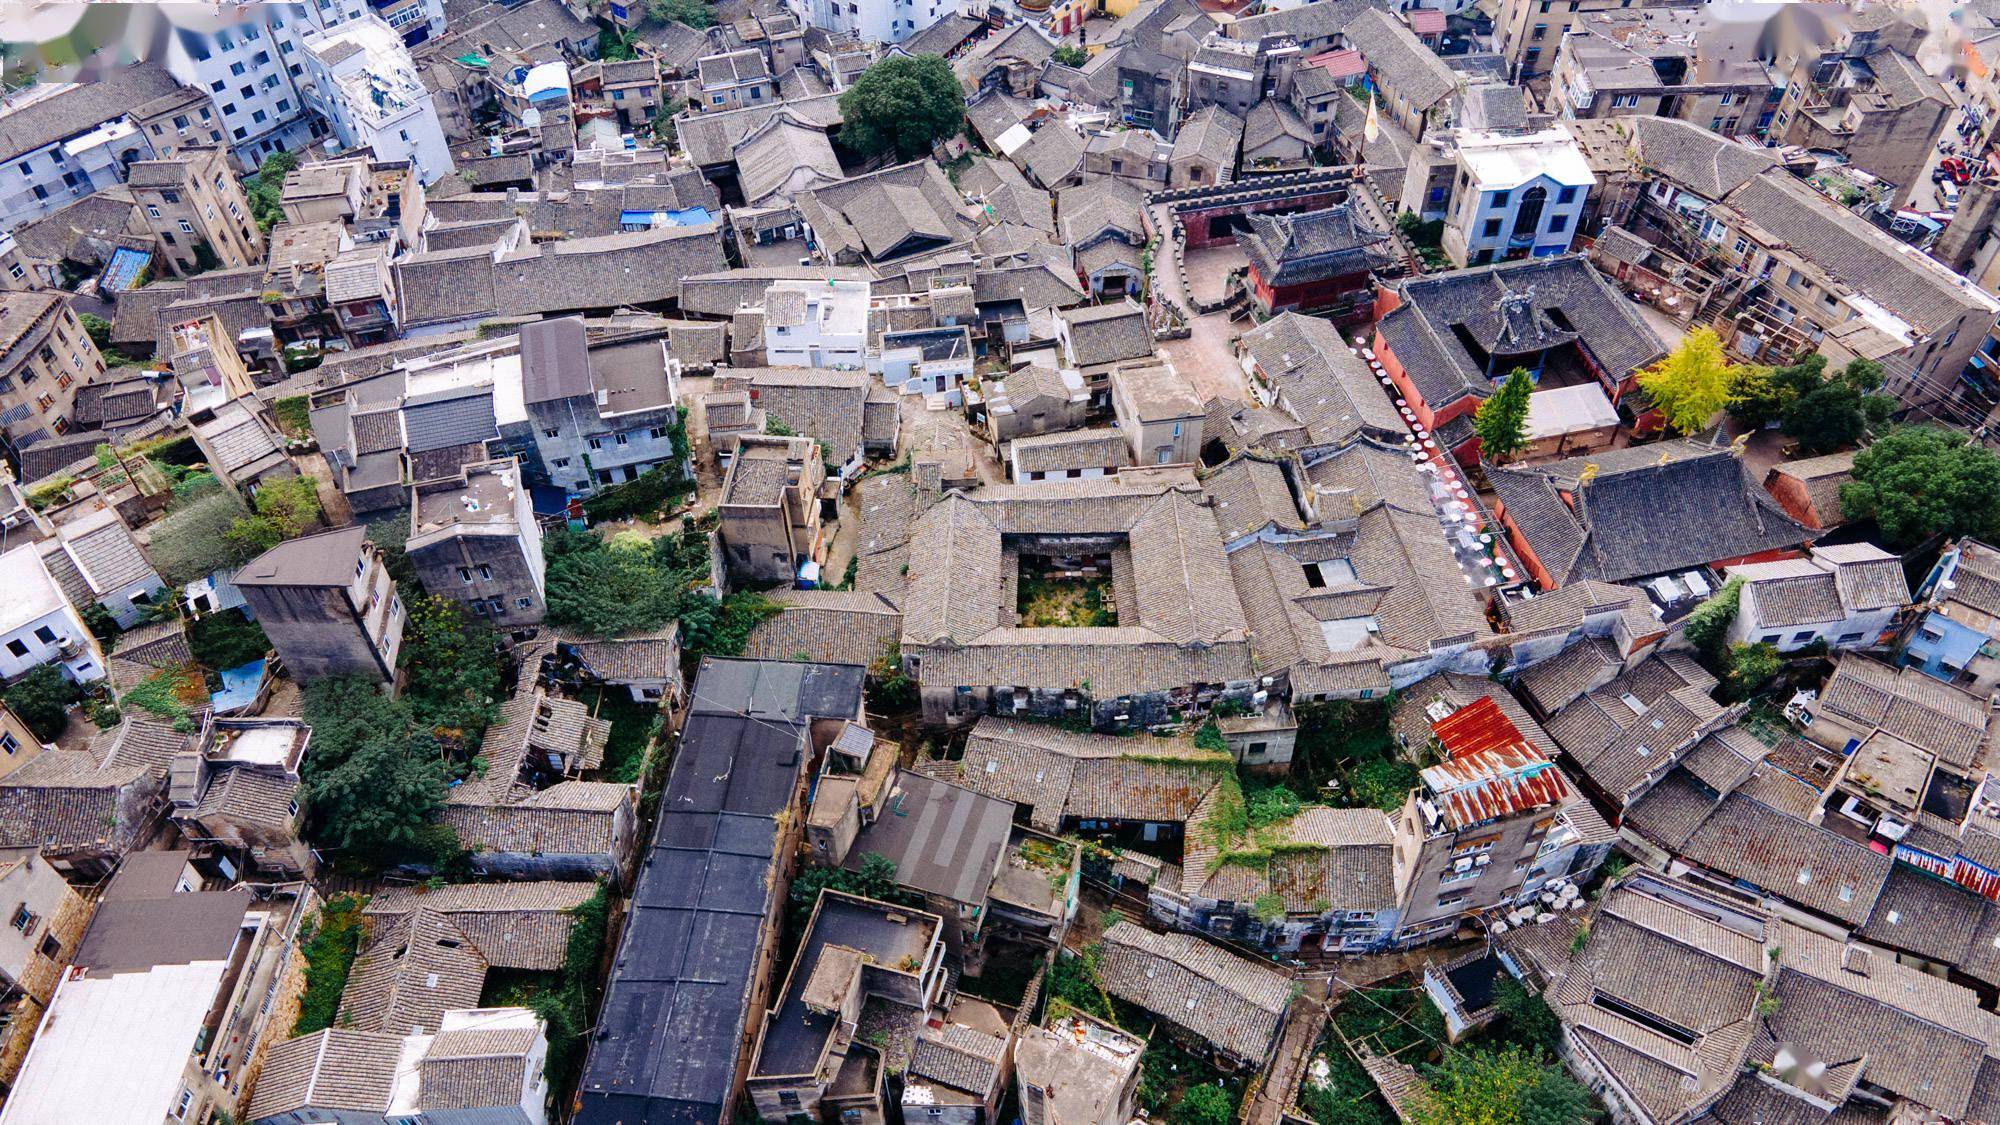 石浦古城保留完整的有4条总长1670米的碗行街,福建街,中街,后街组成了